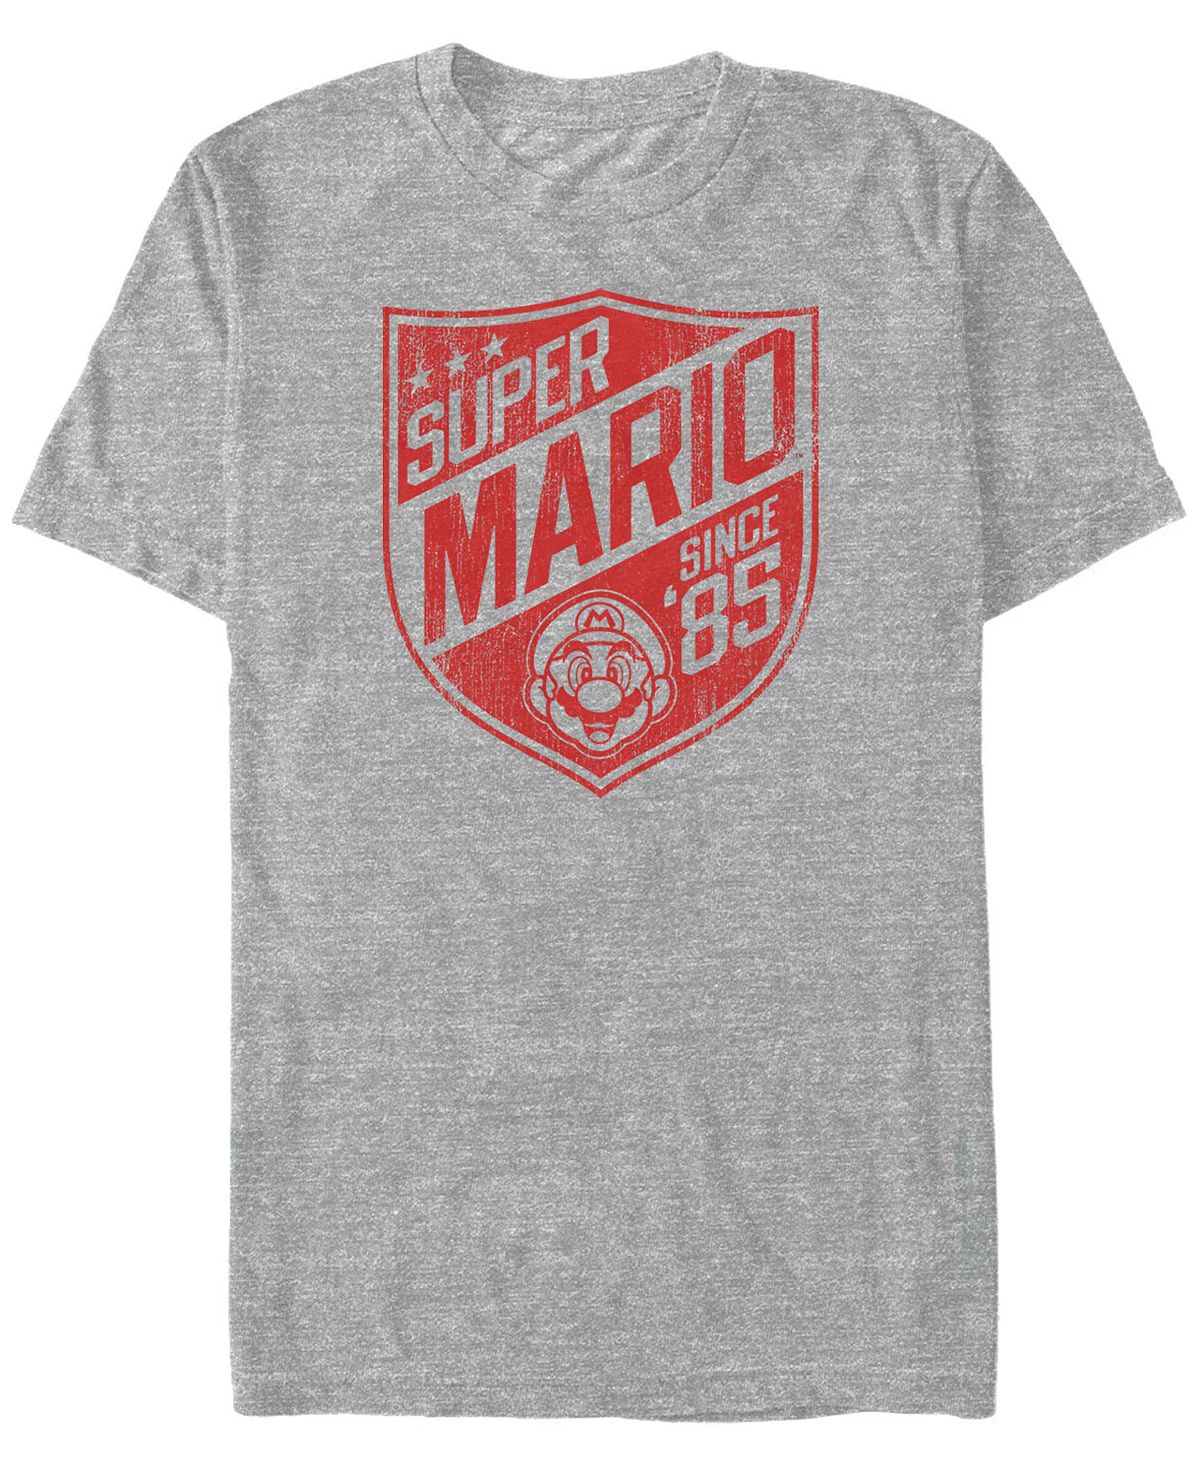 Мужская футболка с коротким рукавом и логотипом nintendo super mario с '85 Fifth Sun, мульти рюкзак луиджи и йоши mario желтый 3